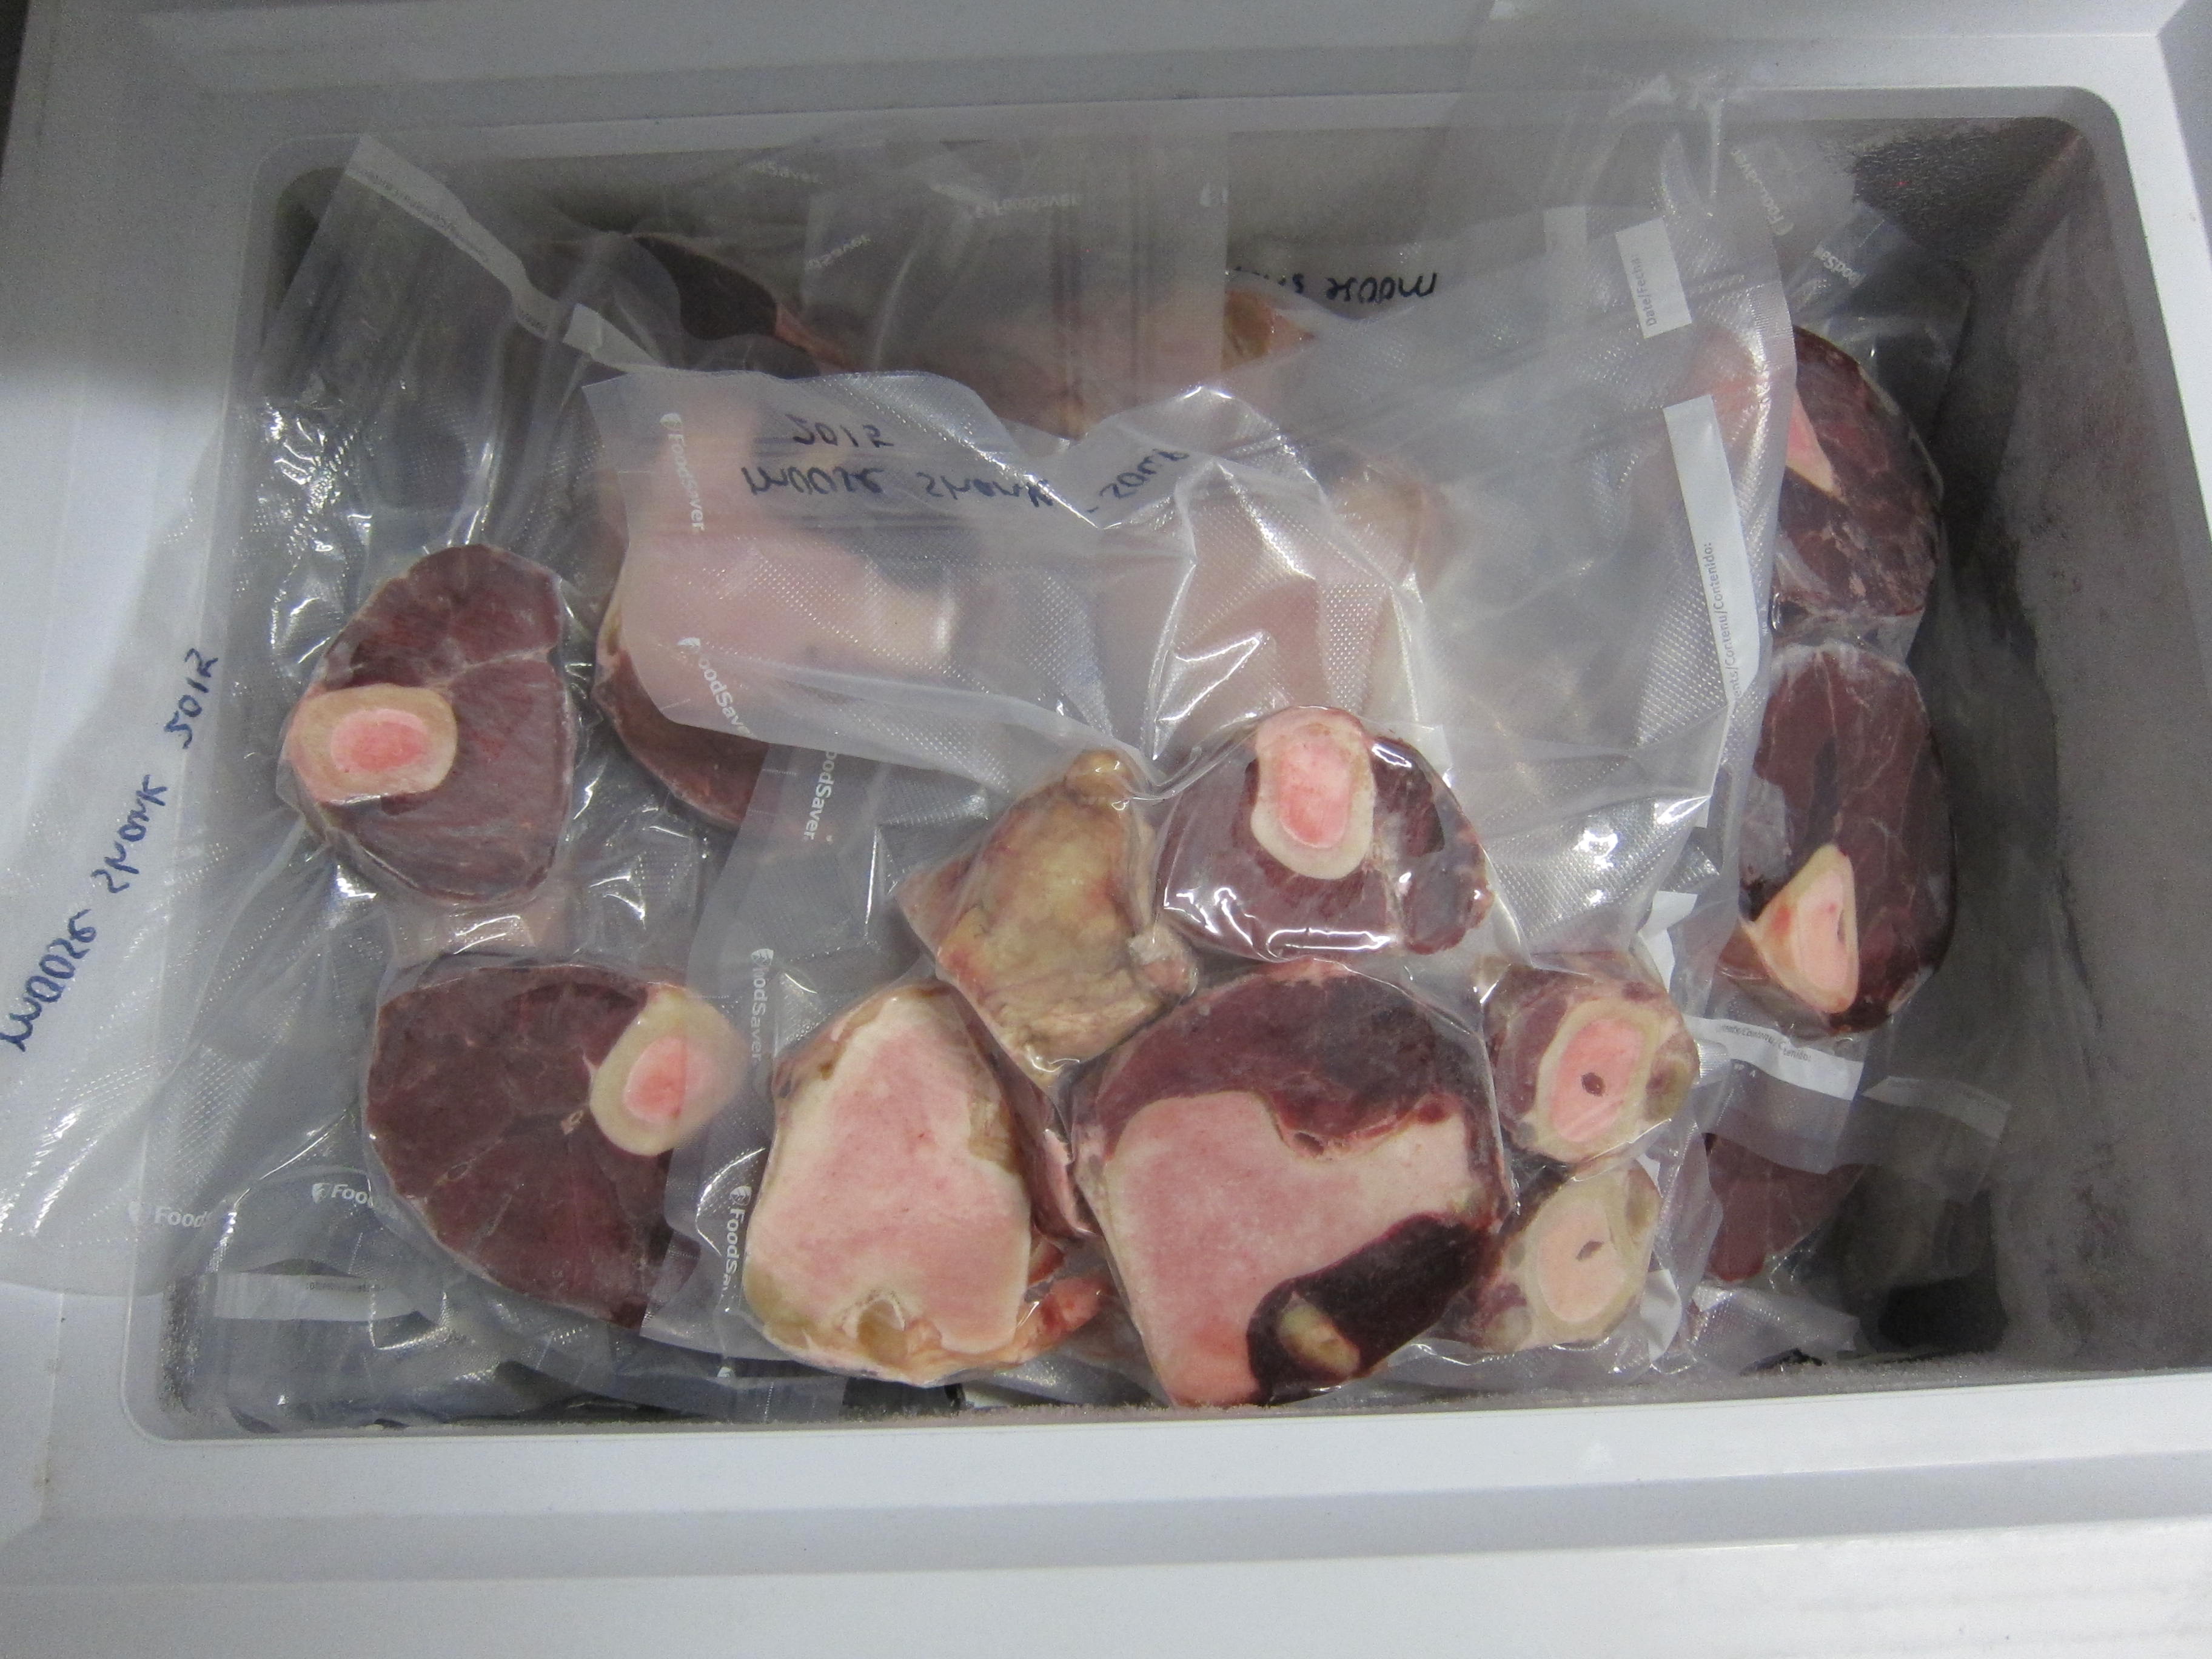 freezer of moose shank steaks